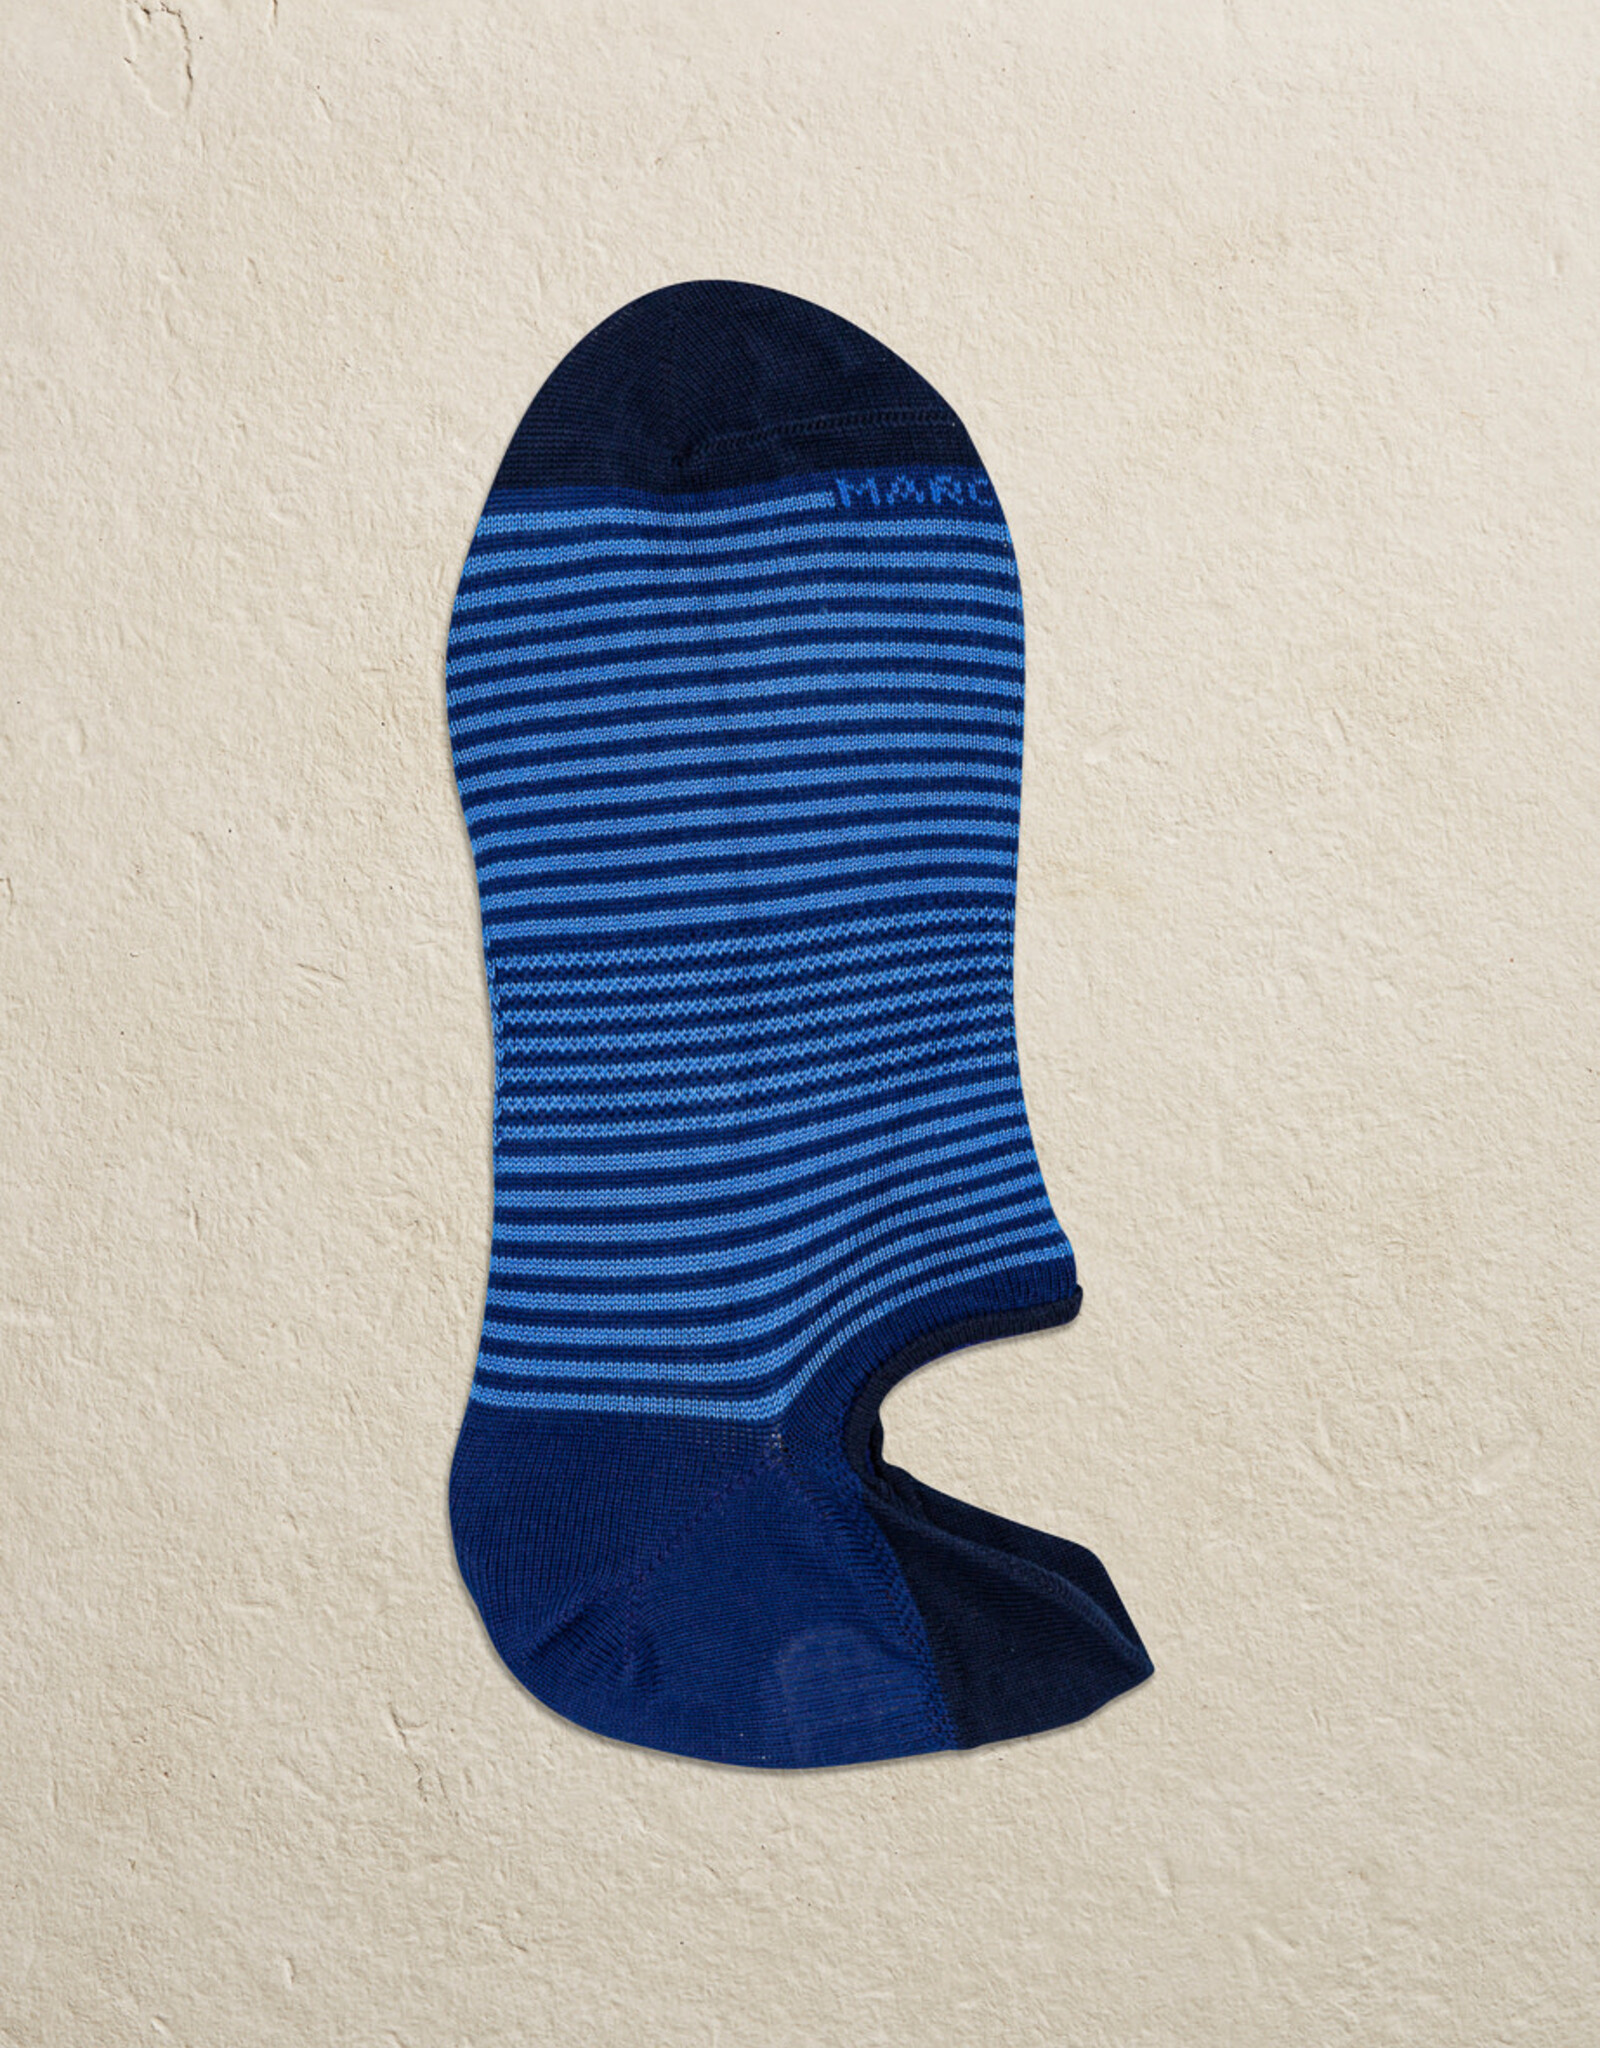 Marcoliani Marcoliani sokken blauw Sneaker 3311K/081 41-45